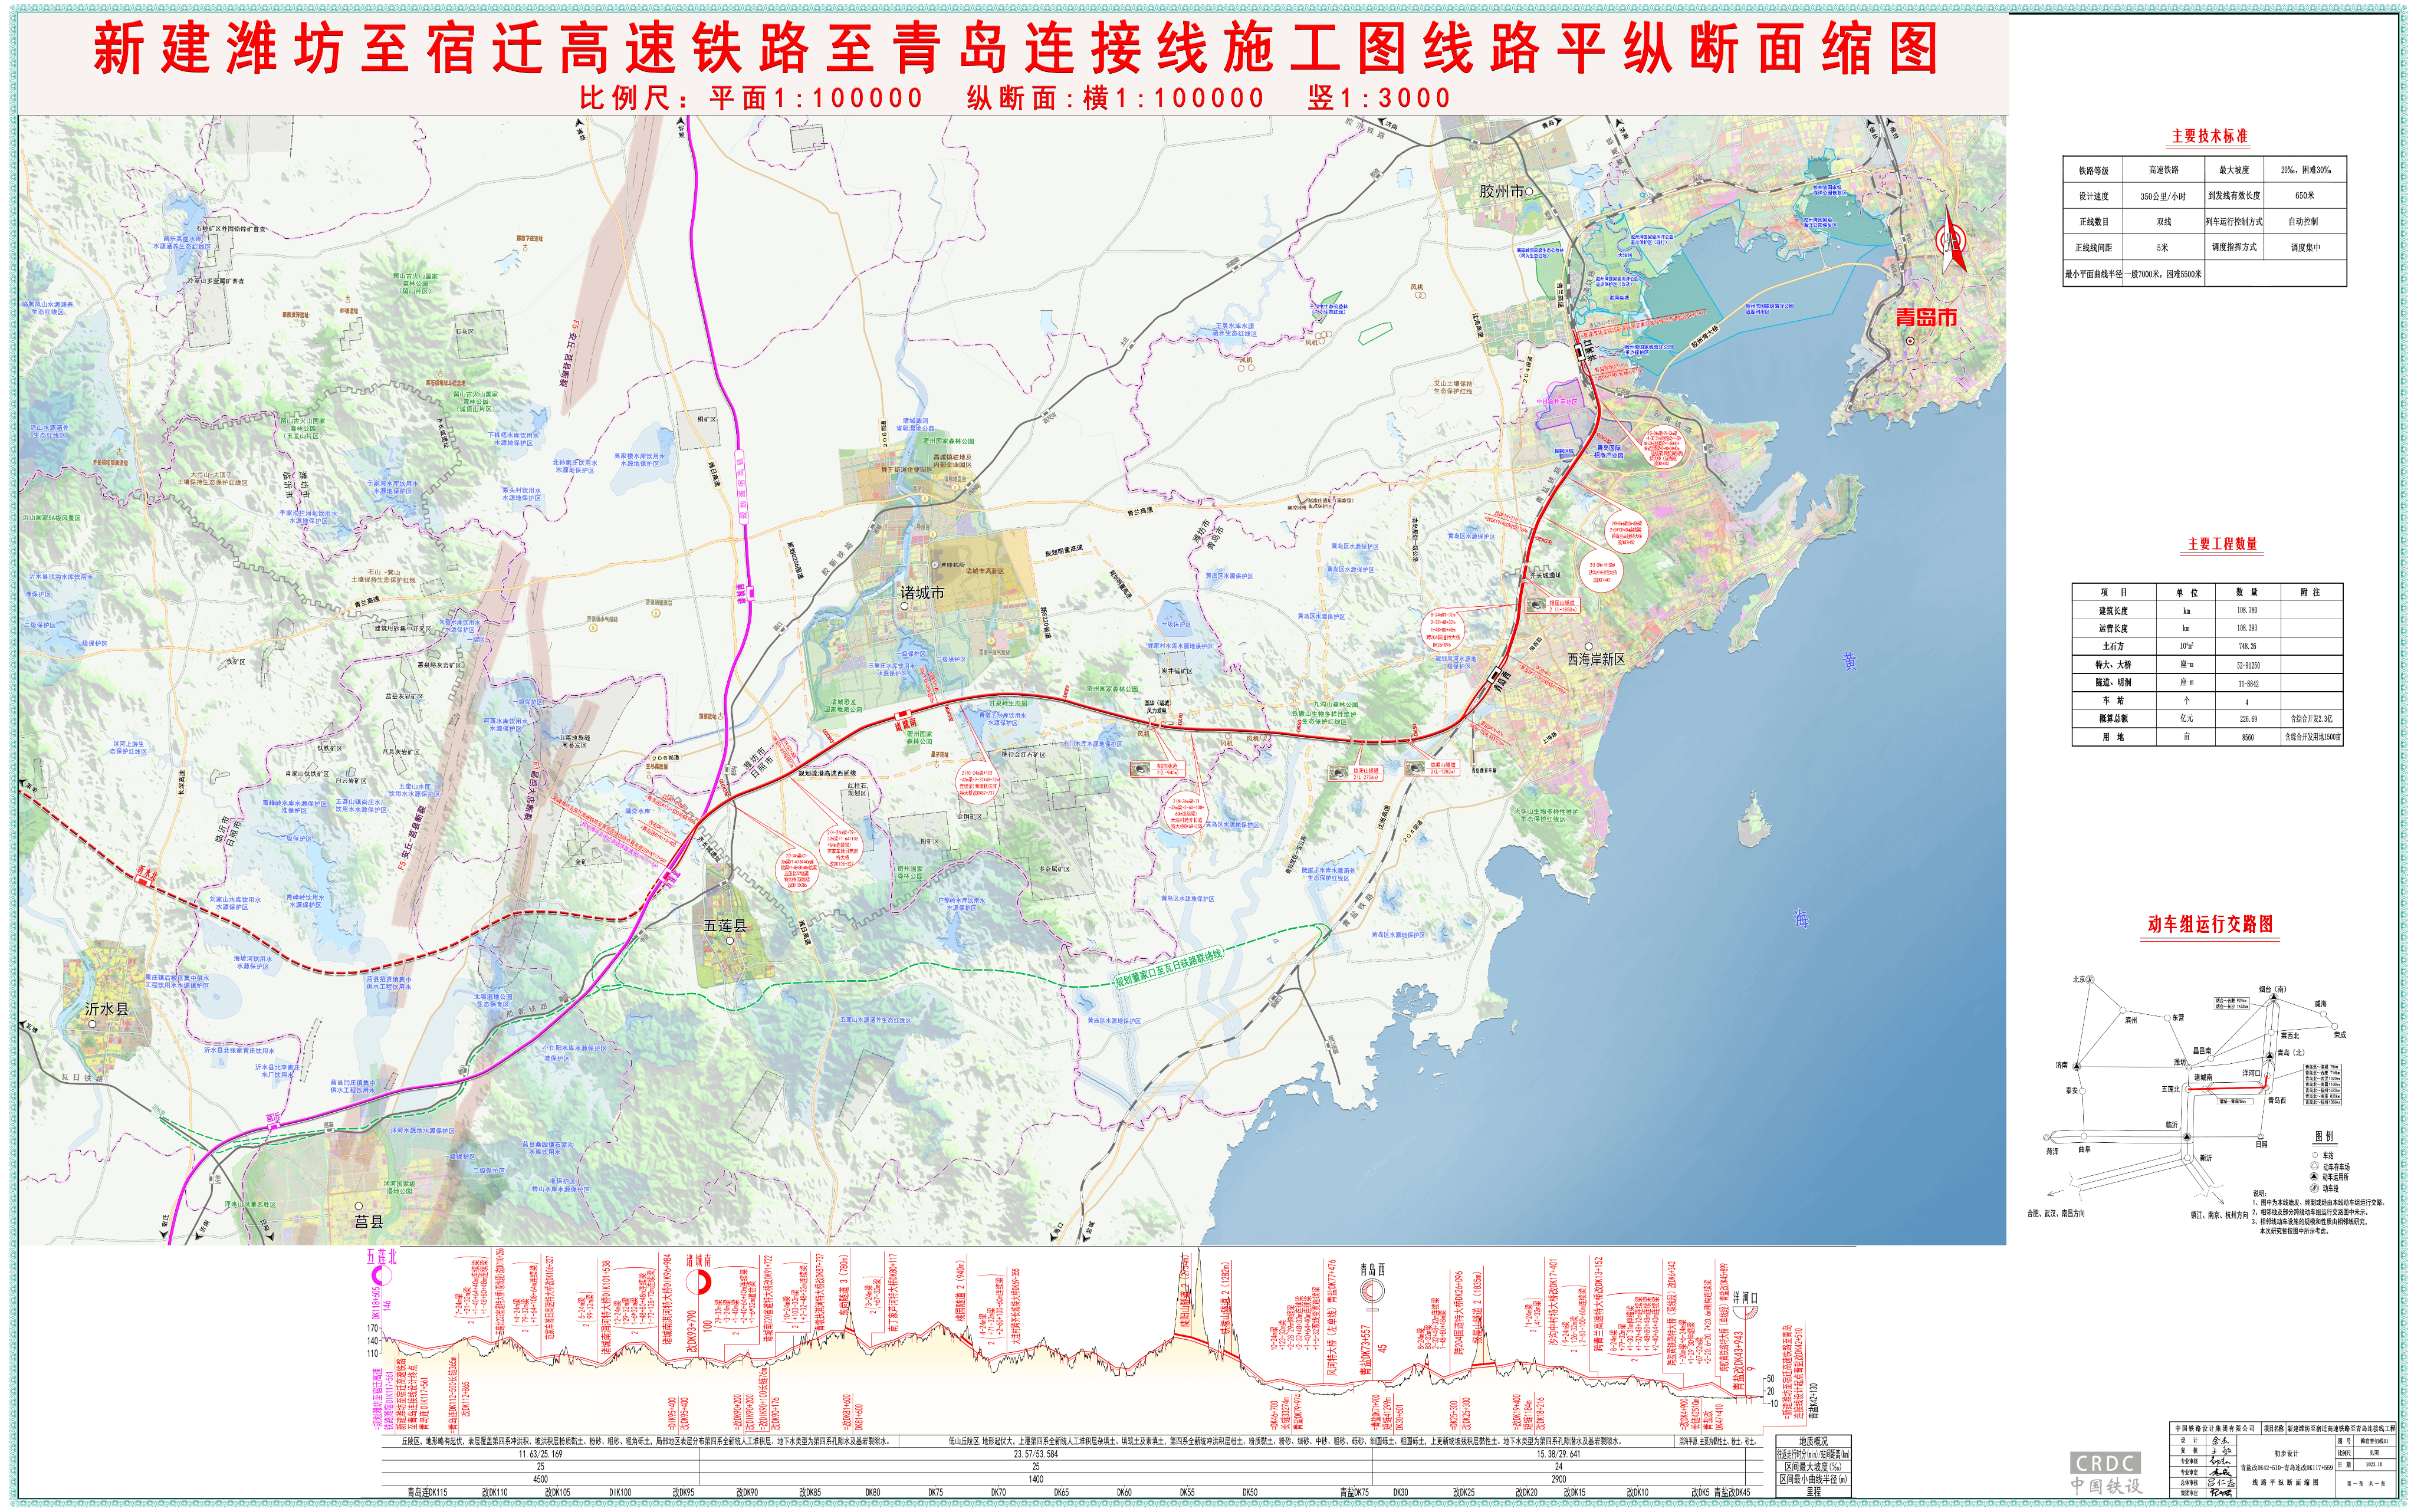 潍宿高铁至青岛连接线是一条兼具城际与路网双功能的高速铁路,作为